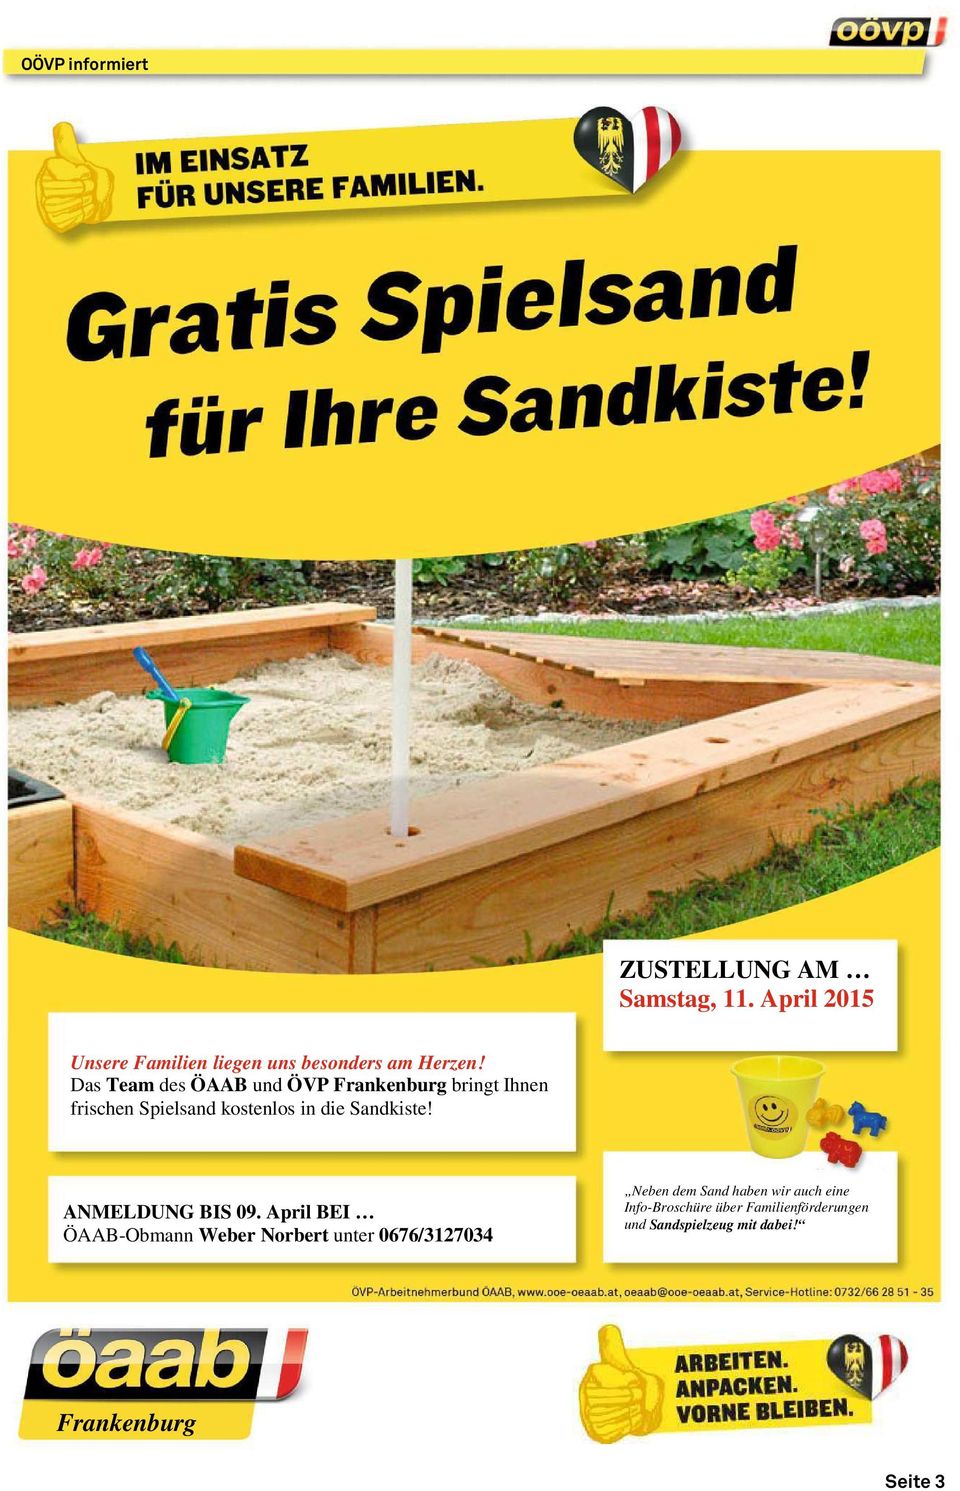 Das Team des ÖAAB und ÖVP Frankenburg bringt Ihnen frischen Spielsand kostenlos in die Sandkiste!